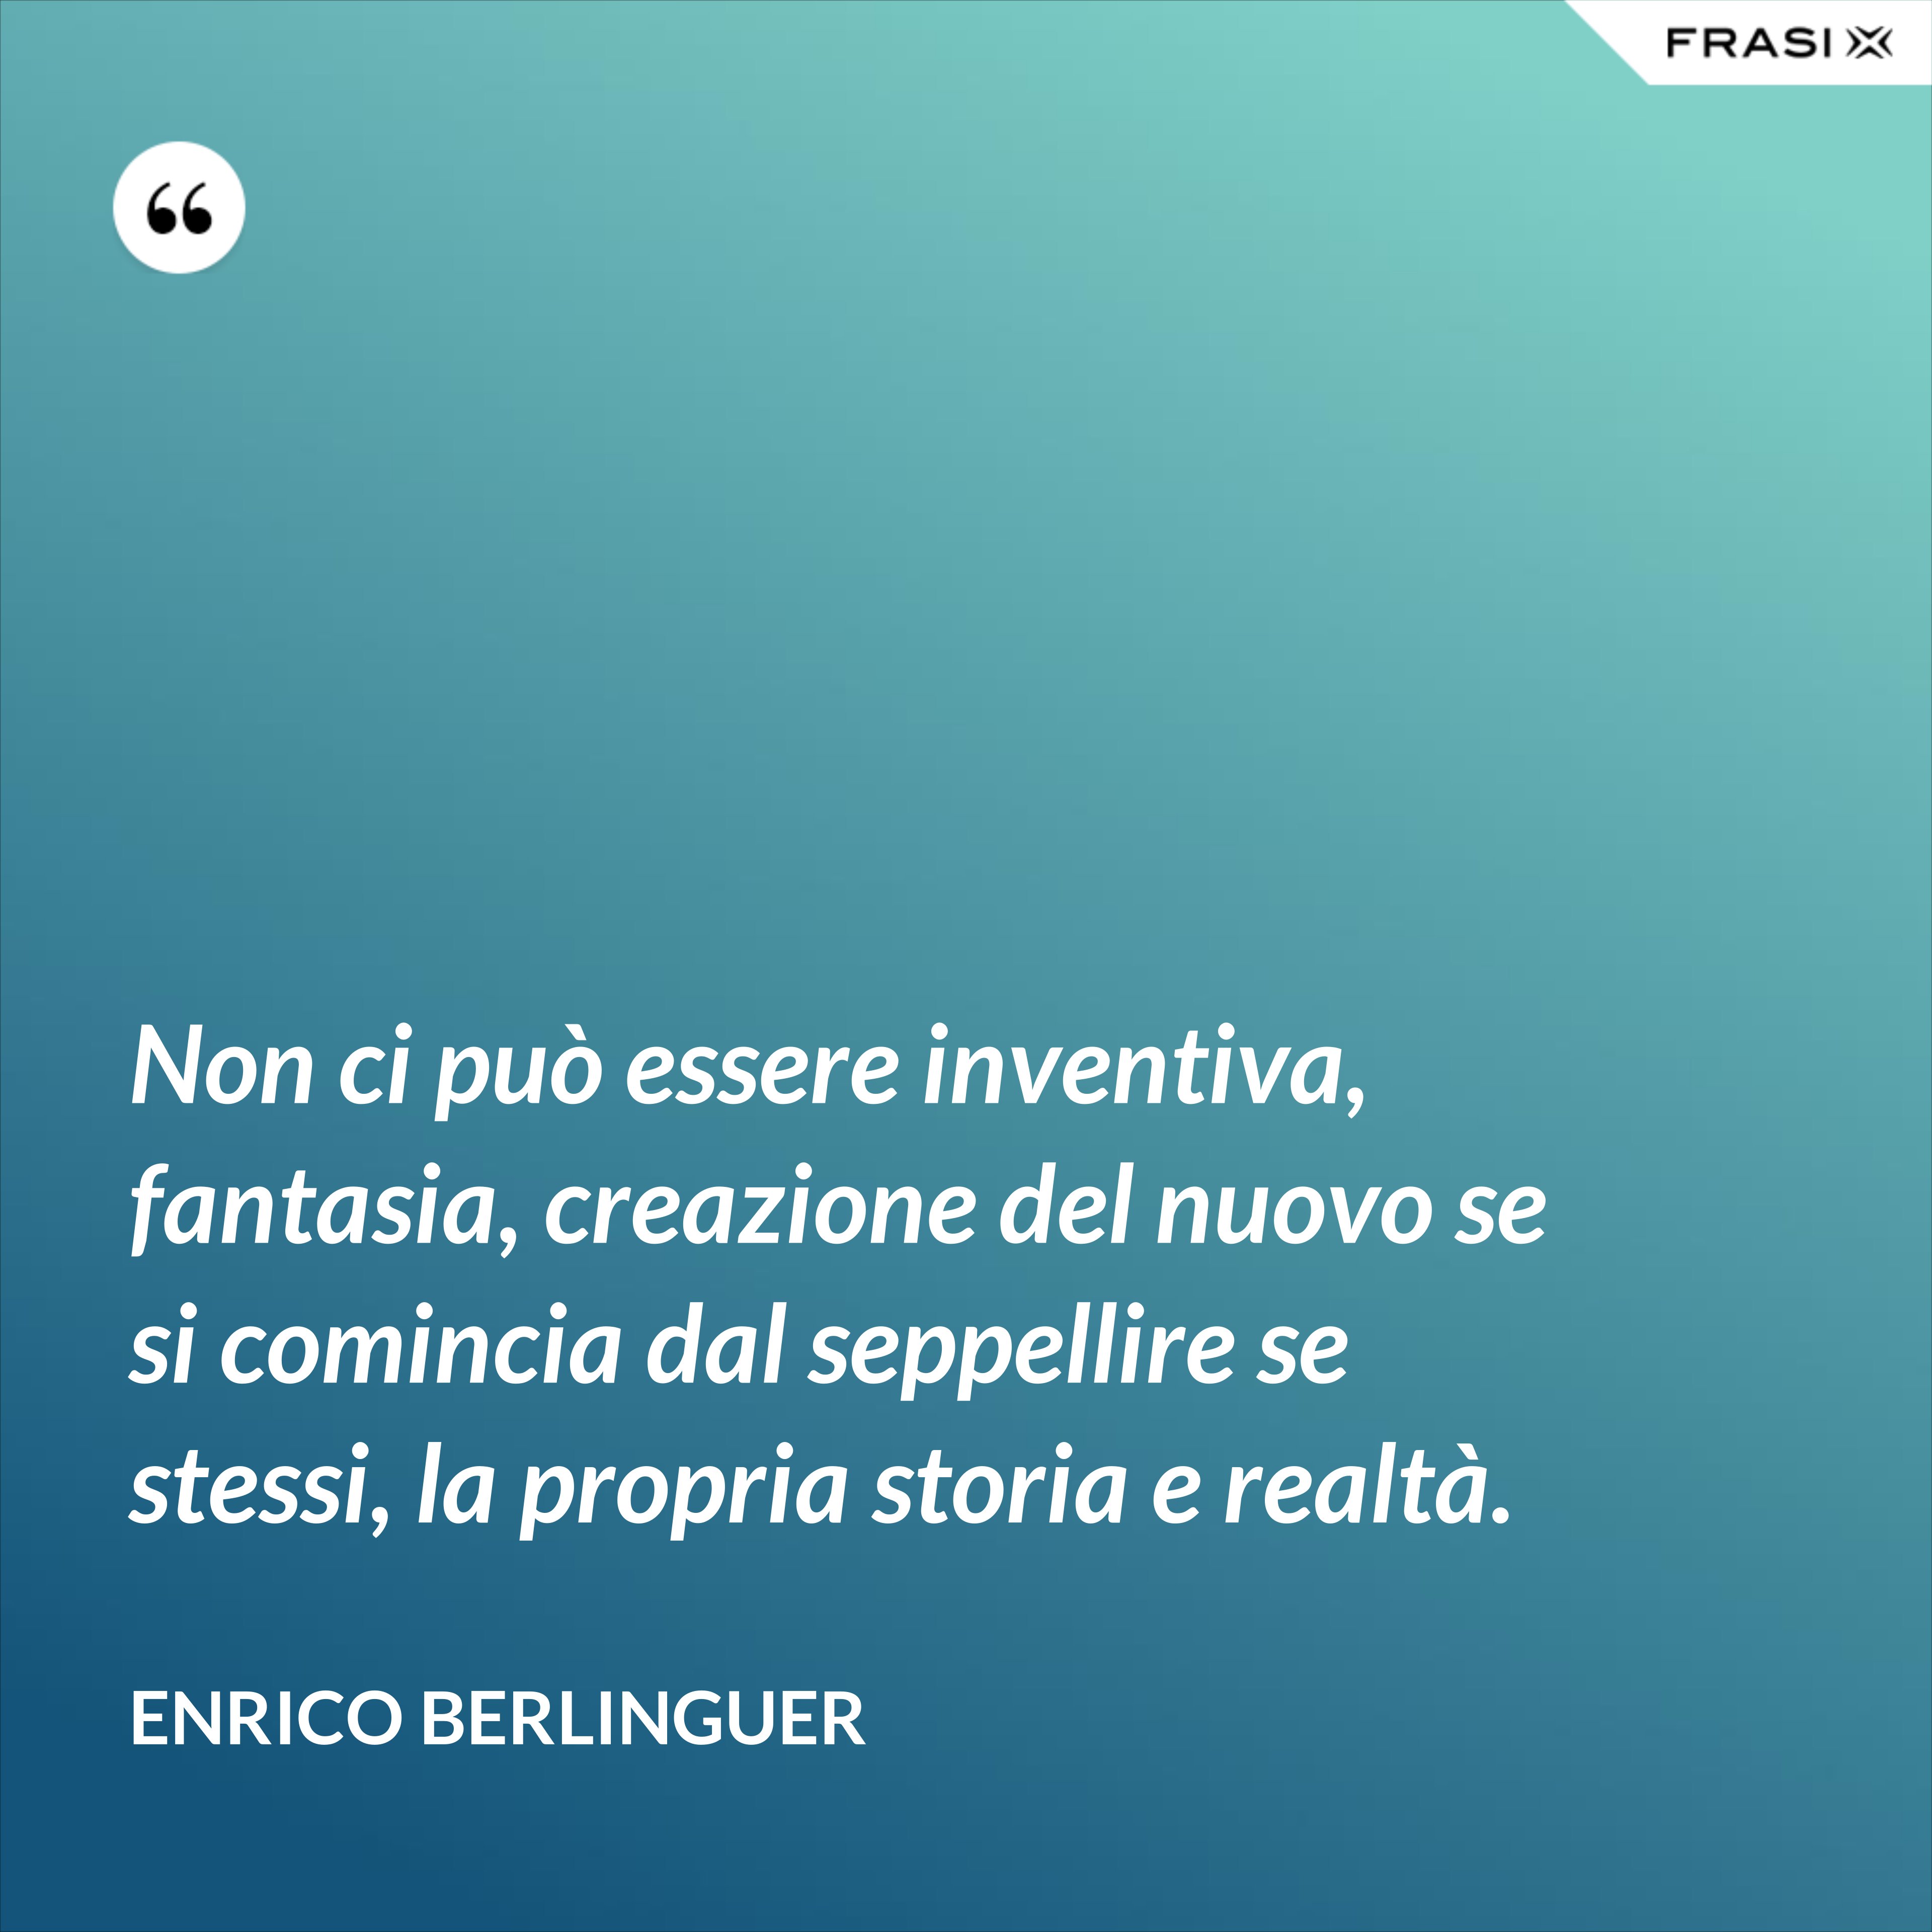 Non ci può essere inventiva, fantasia, creazione del nuovo se si comincia dal seppellire se stessi, la propria storia e realtà. - Enrico Berlinguer